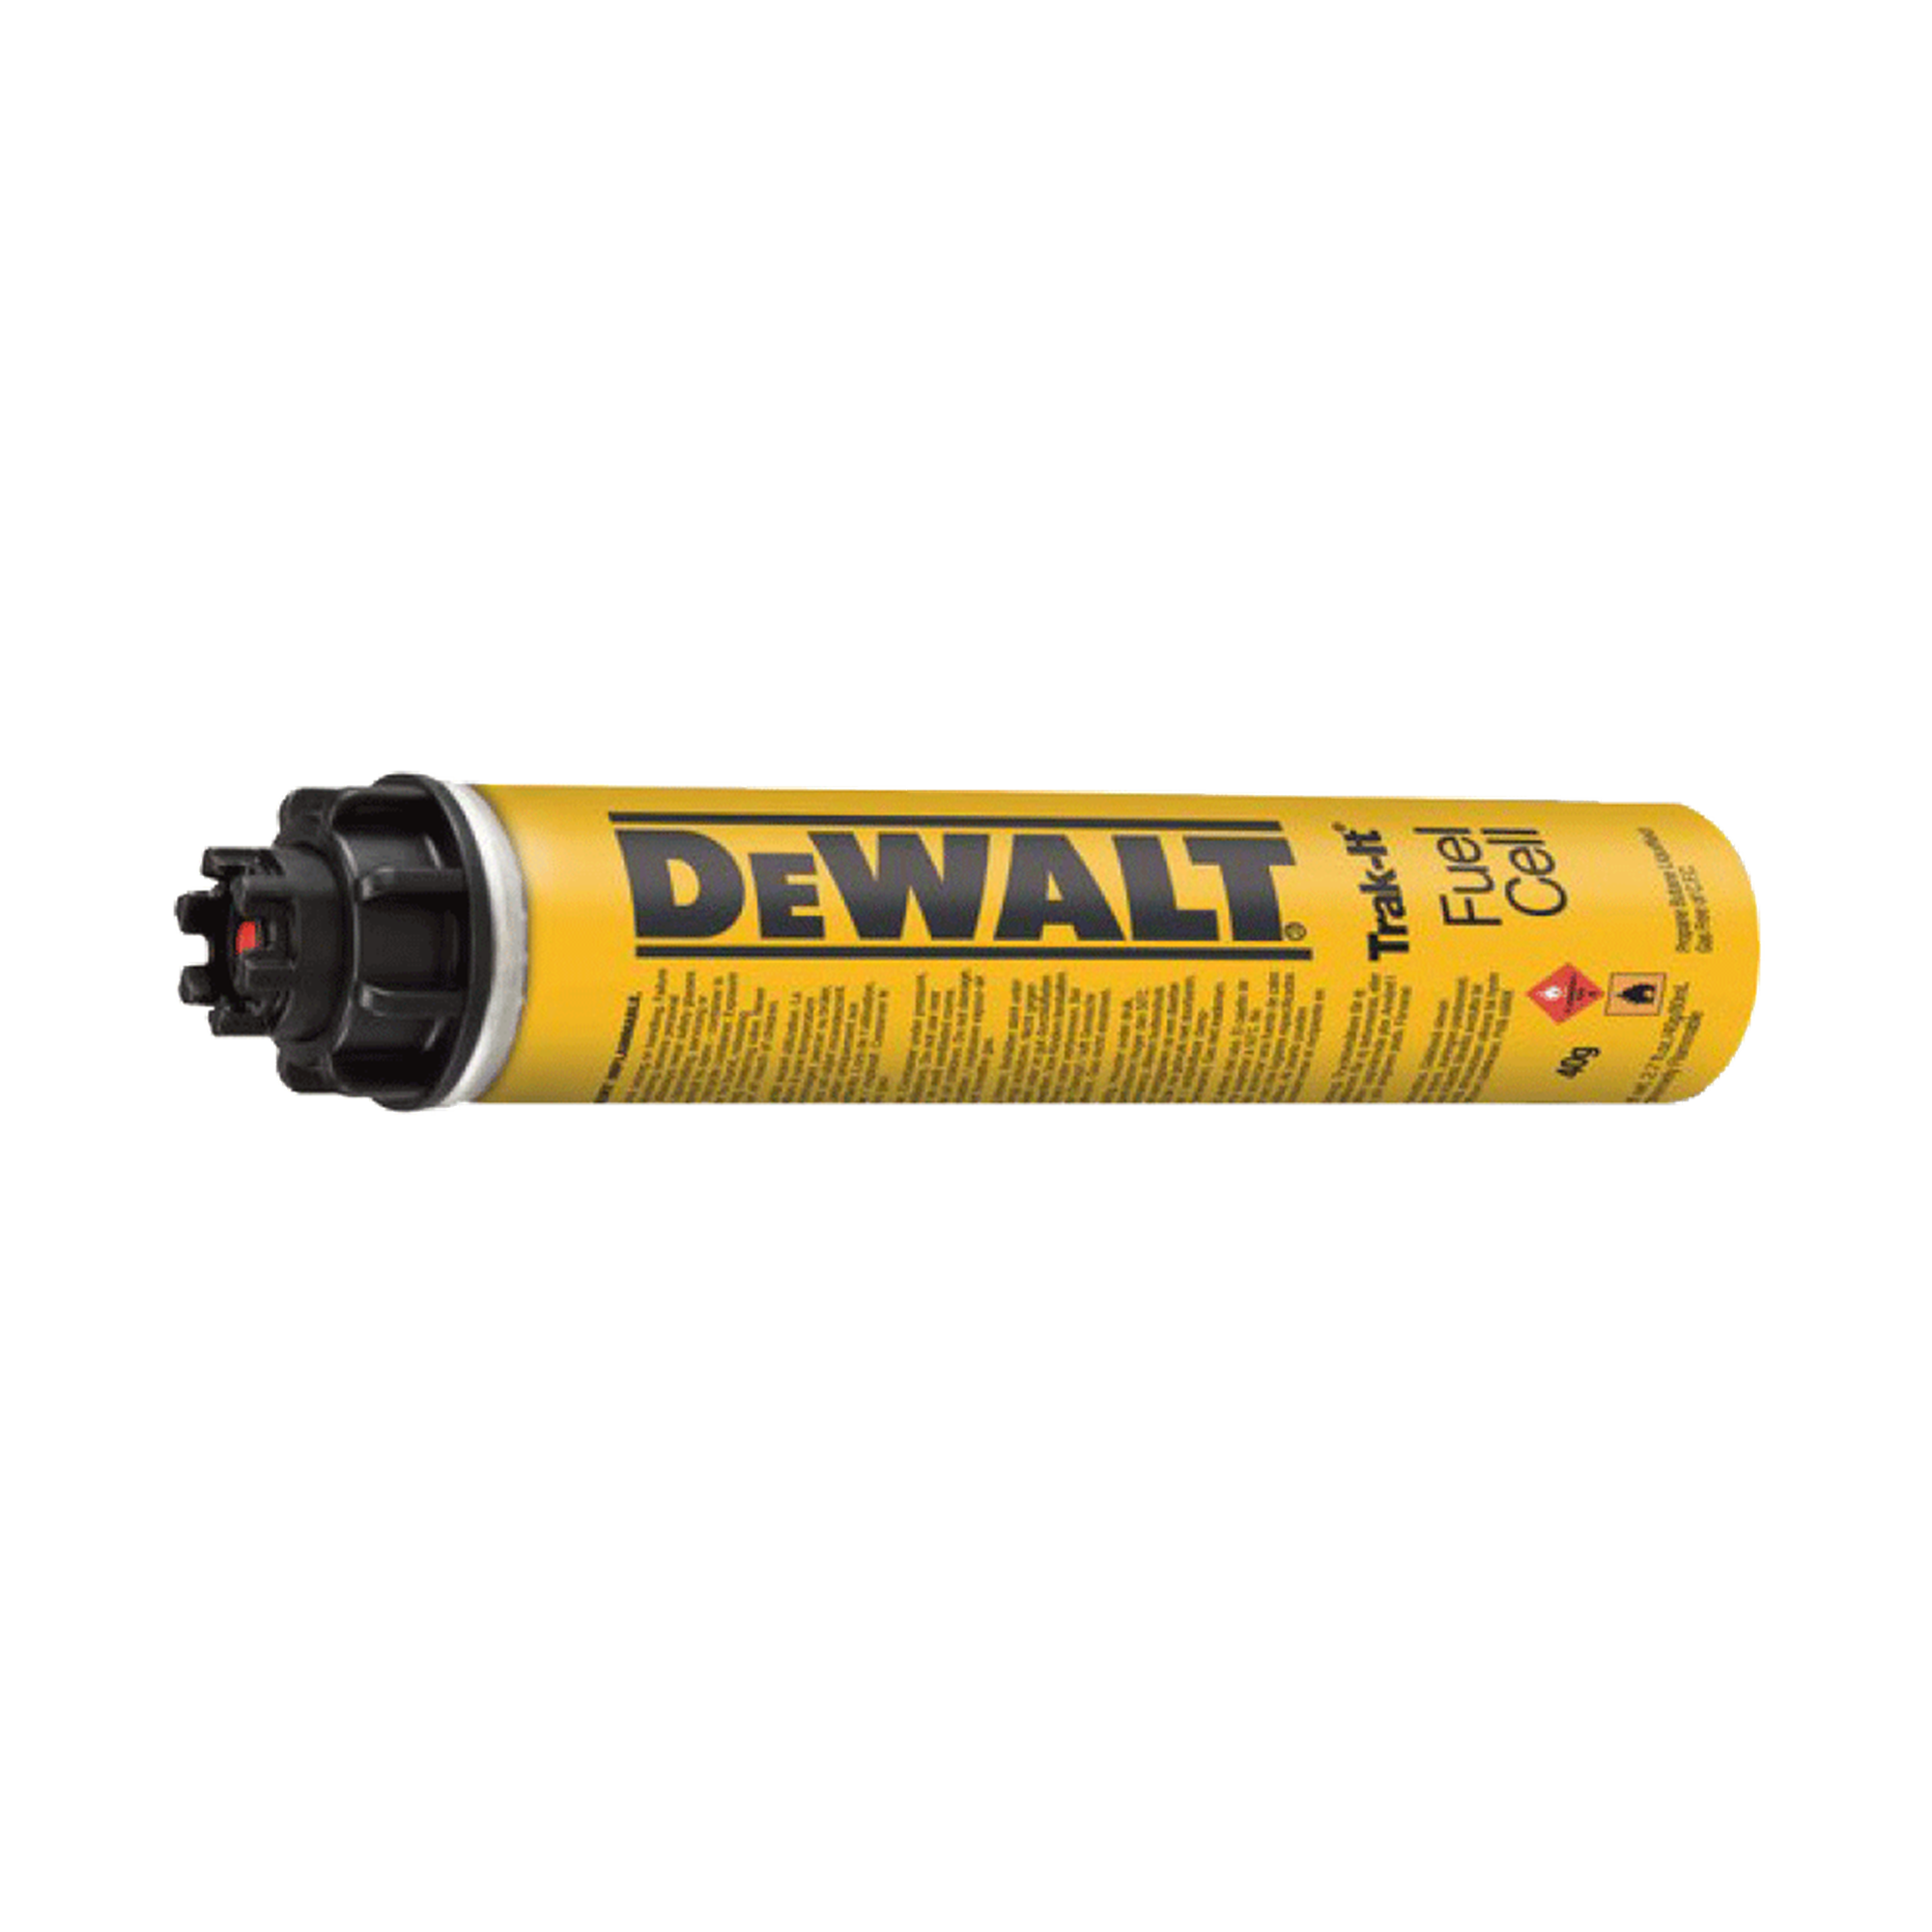 Nails C5 With Gas Dewalt Xh Ddf6510025